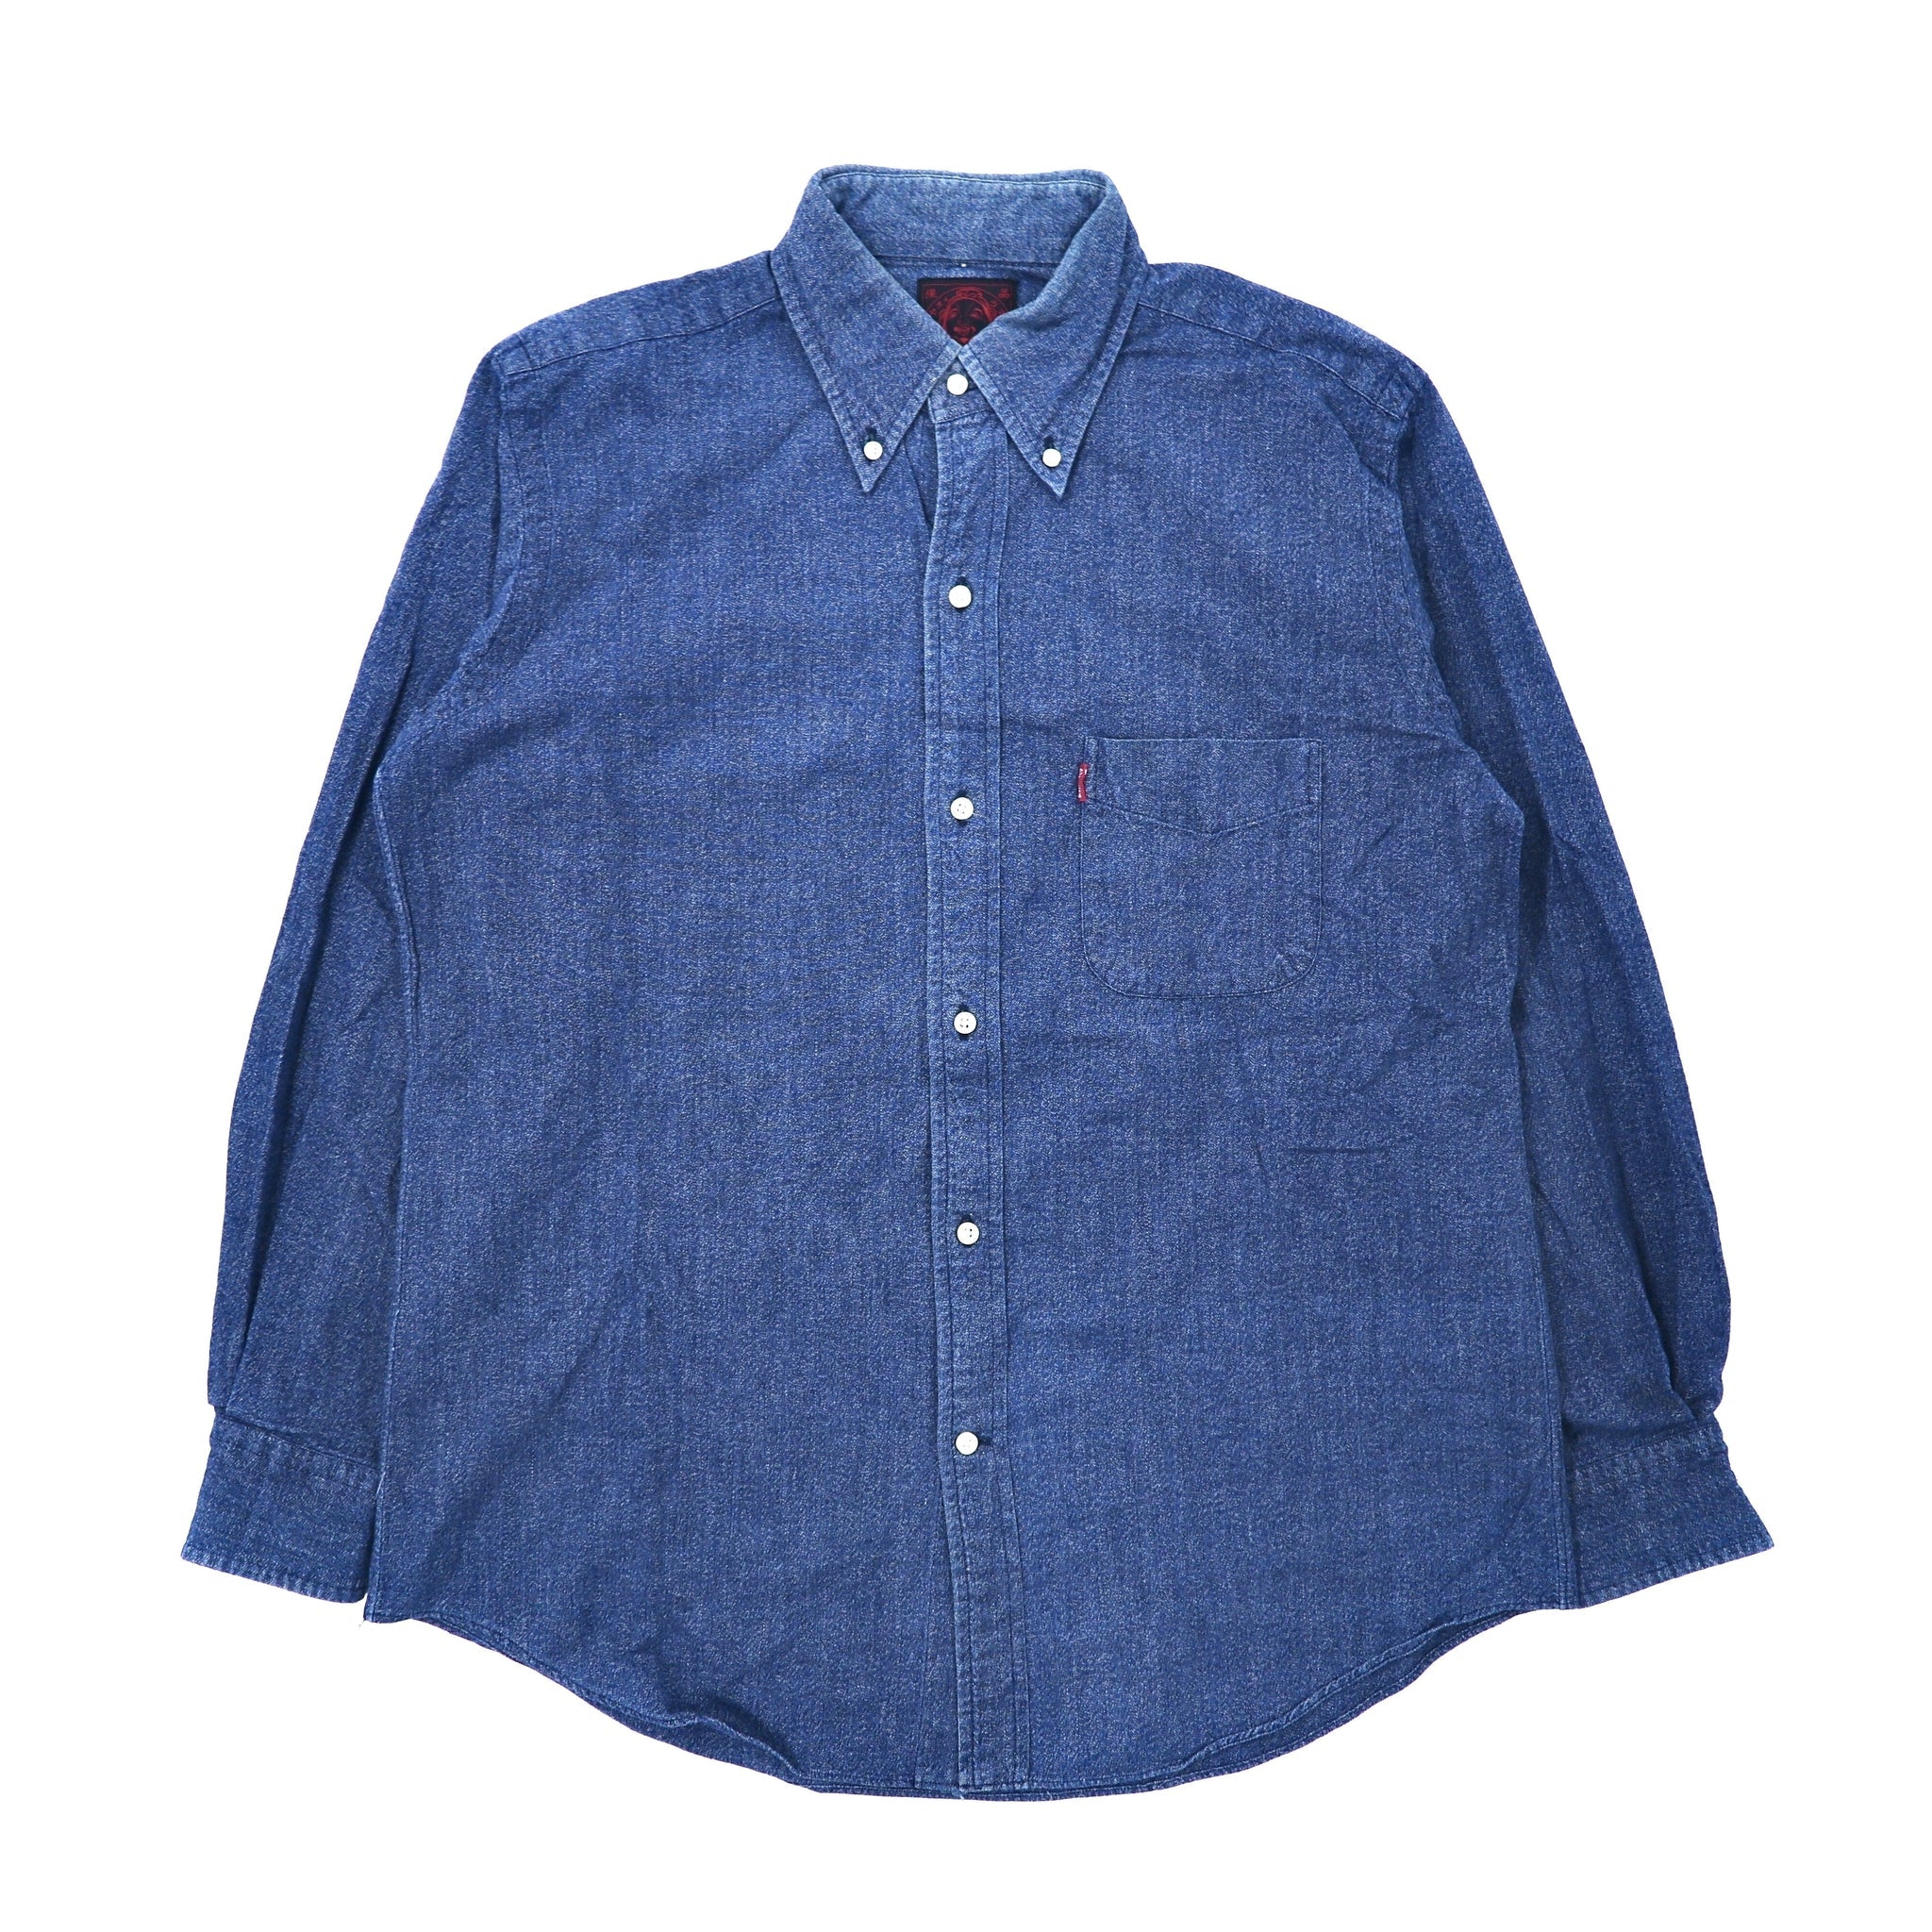 EVISU ボタンダウンシャツ 38 ブルー デニム